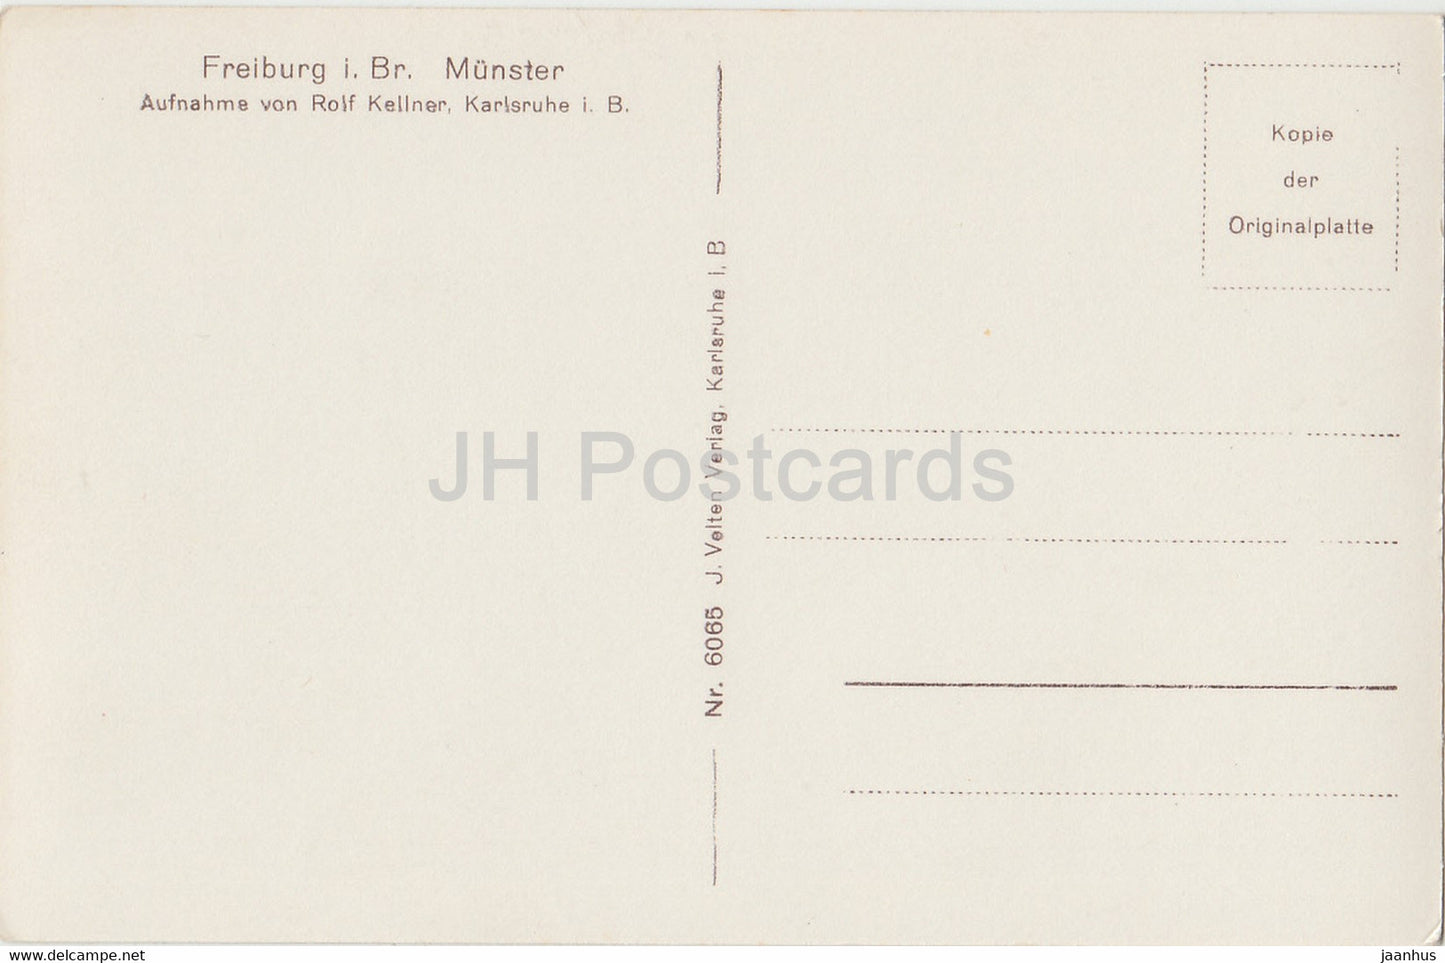 Freiburg i B - Münster - Dom - alte Postkarte - Deutschland - unbenutzt